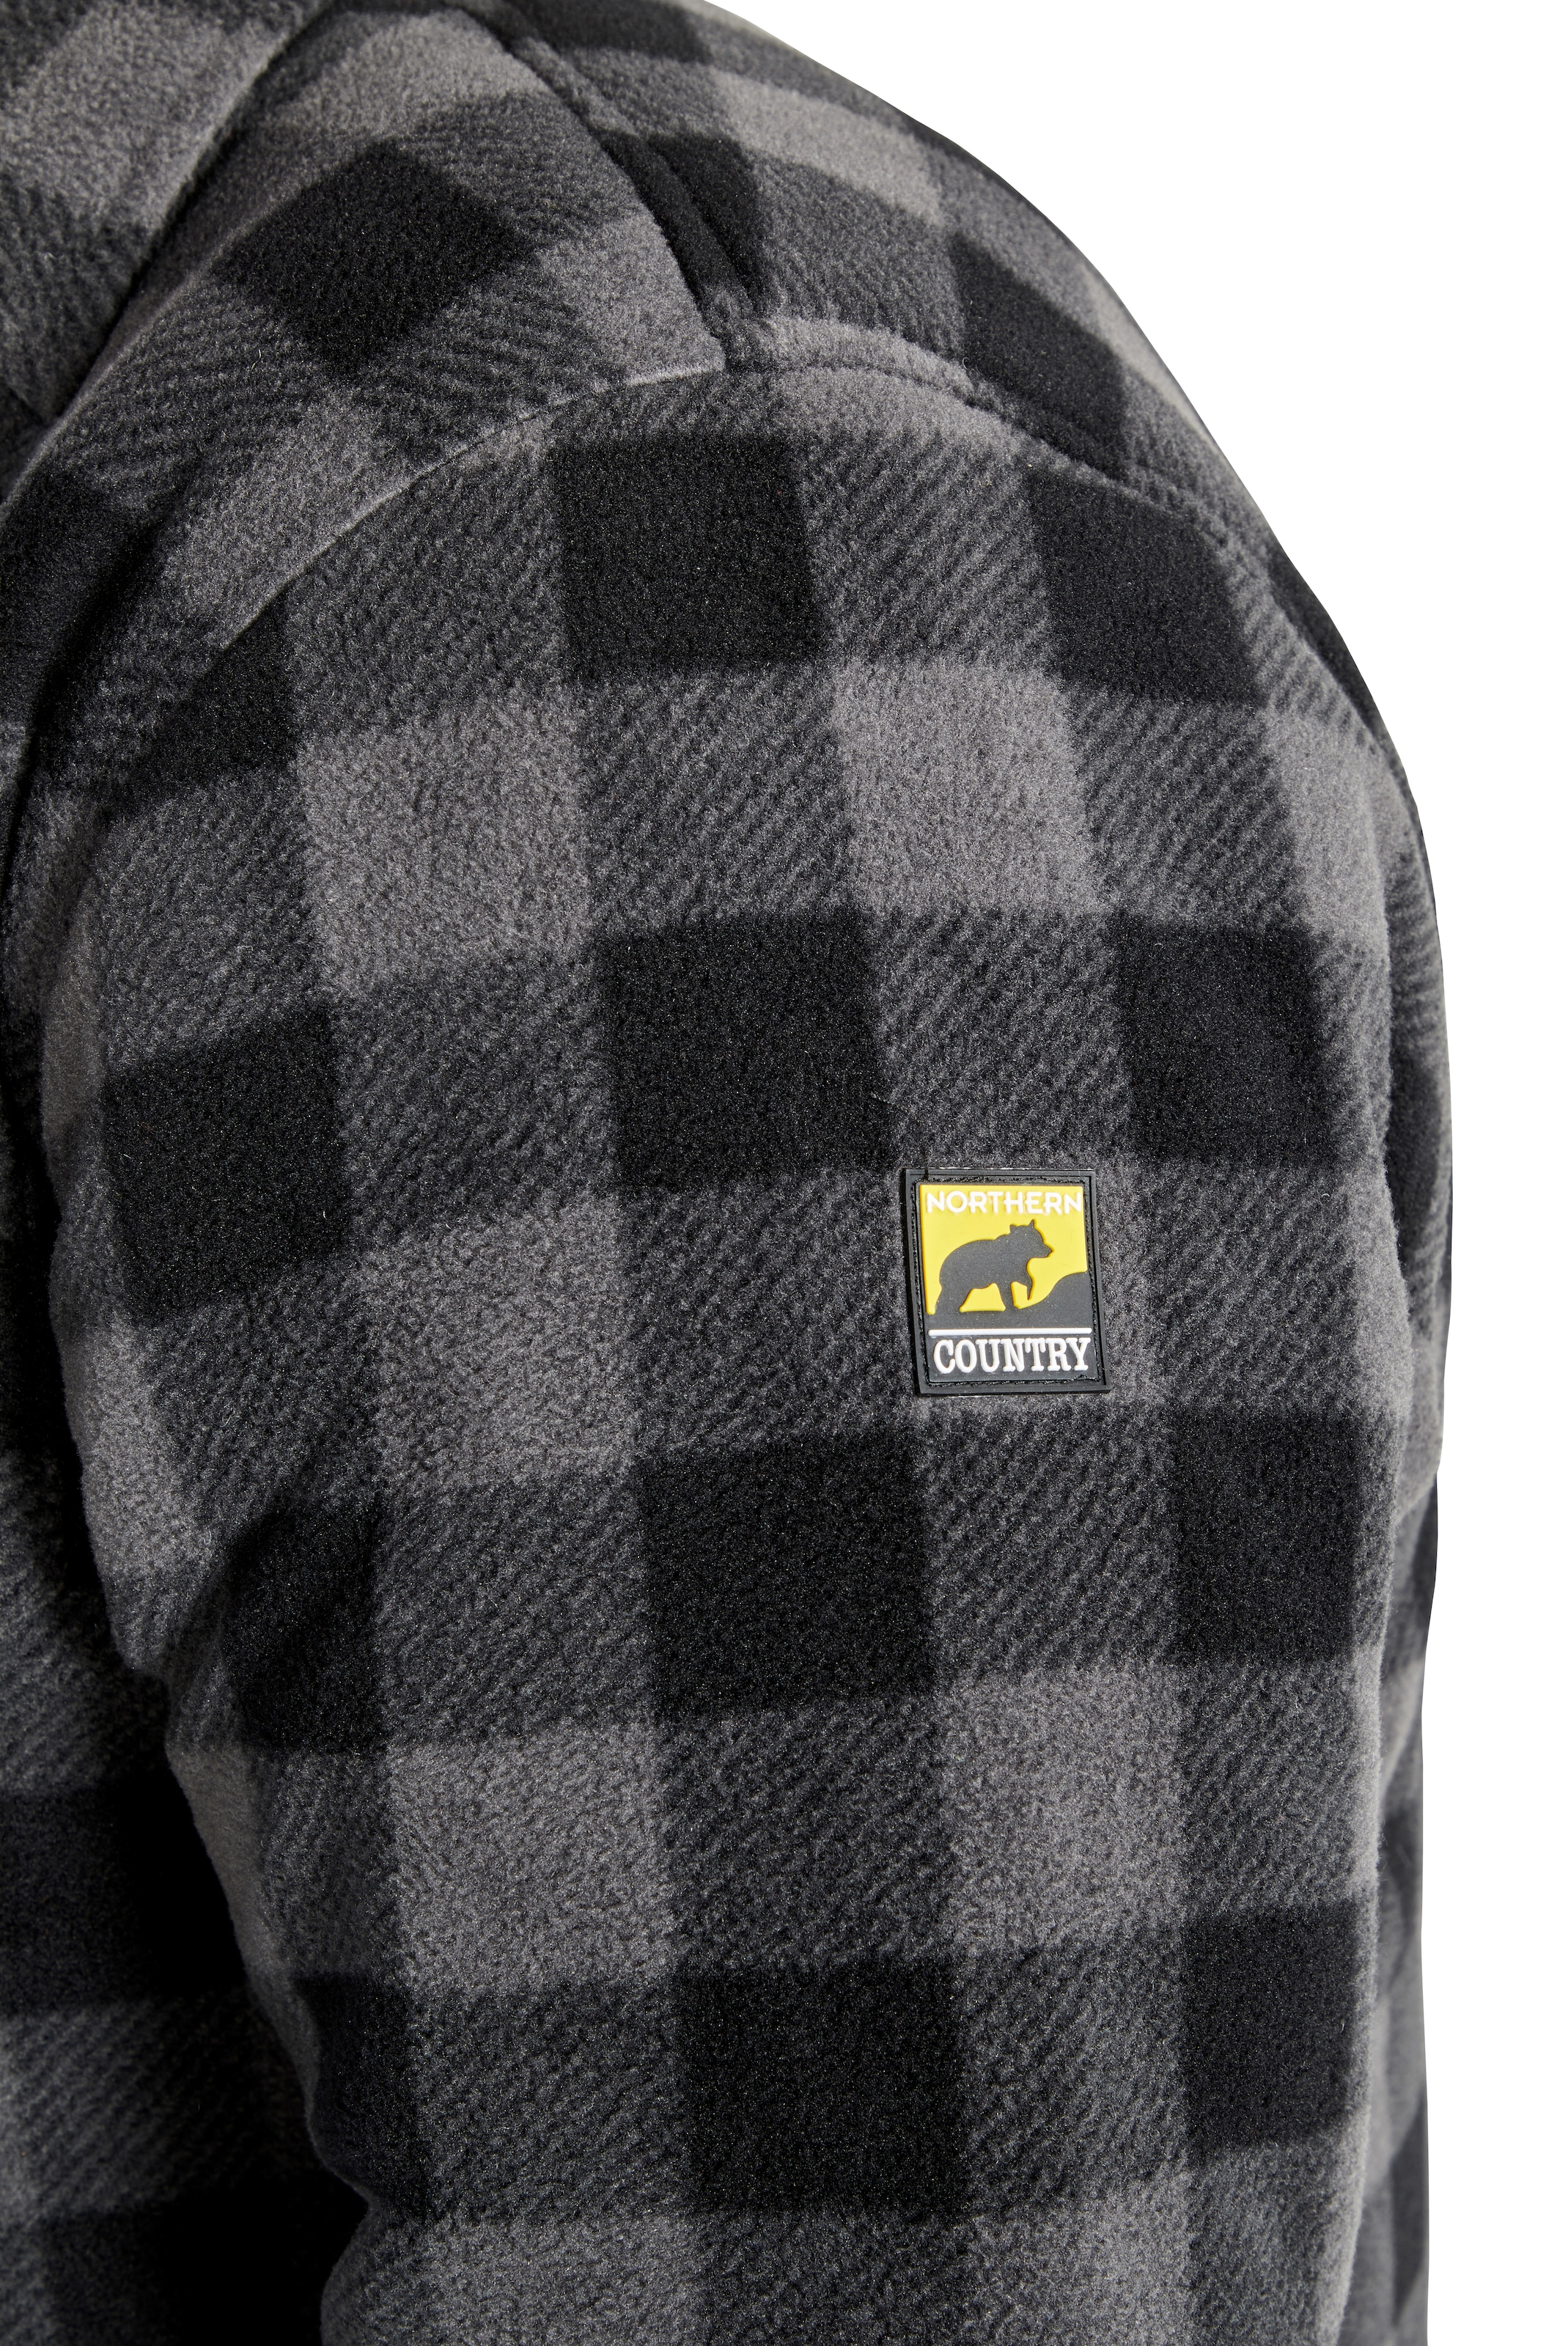 Northern Country Flanellhemd, warm gefüttert, mit 5 Taschen, mit verlängertem  Rücken, Logo auf dem Arm, zweifarbiges Karo, als Jacke offen oder Hemd  zugeknöpft zu tragen, wärmender und weicher Flanellstoff im Online-Shop  kaufen |